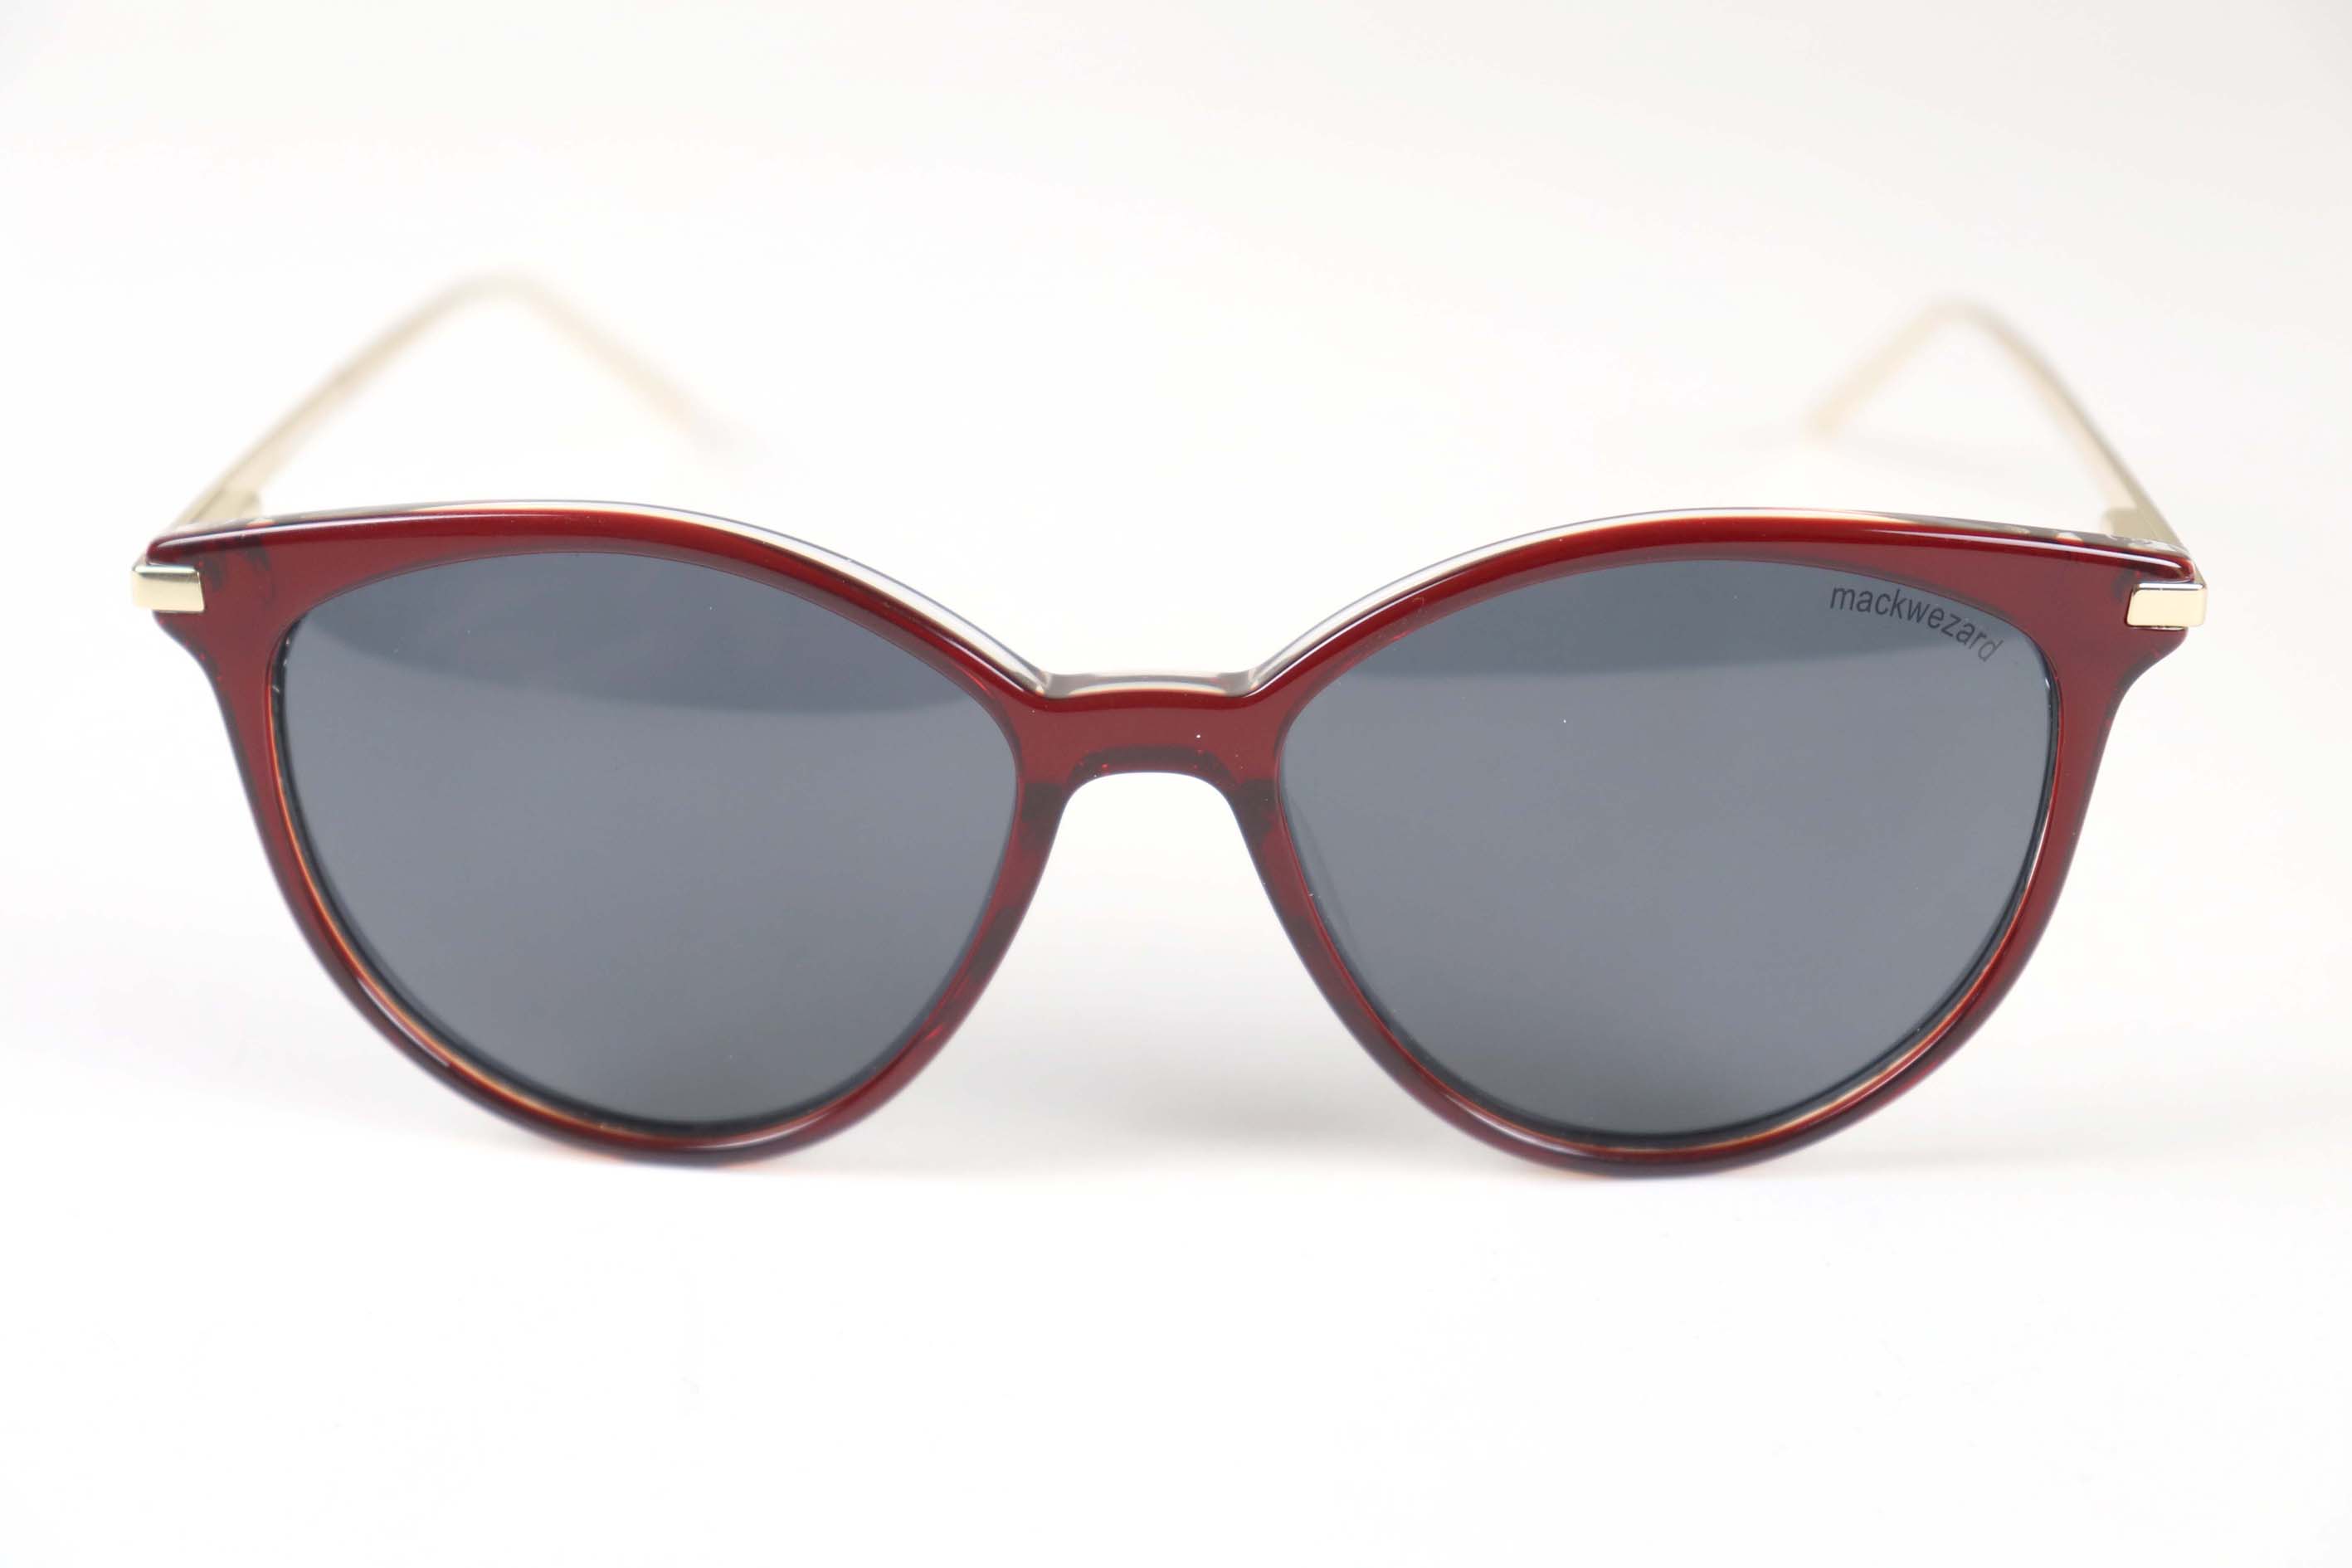 Mackwezard Sunglasses-OR-FG1280-C3-S